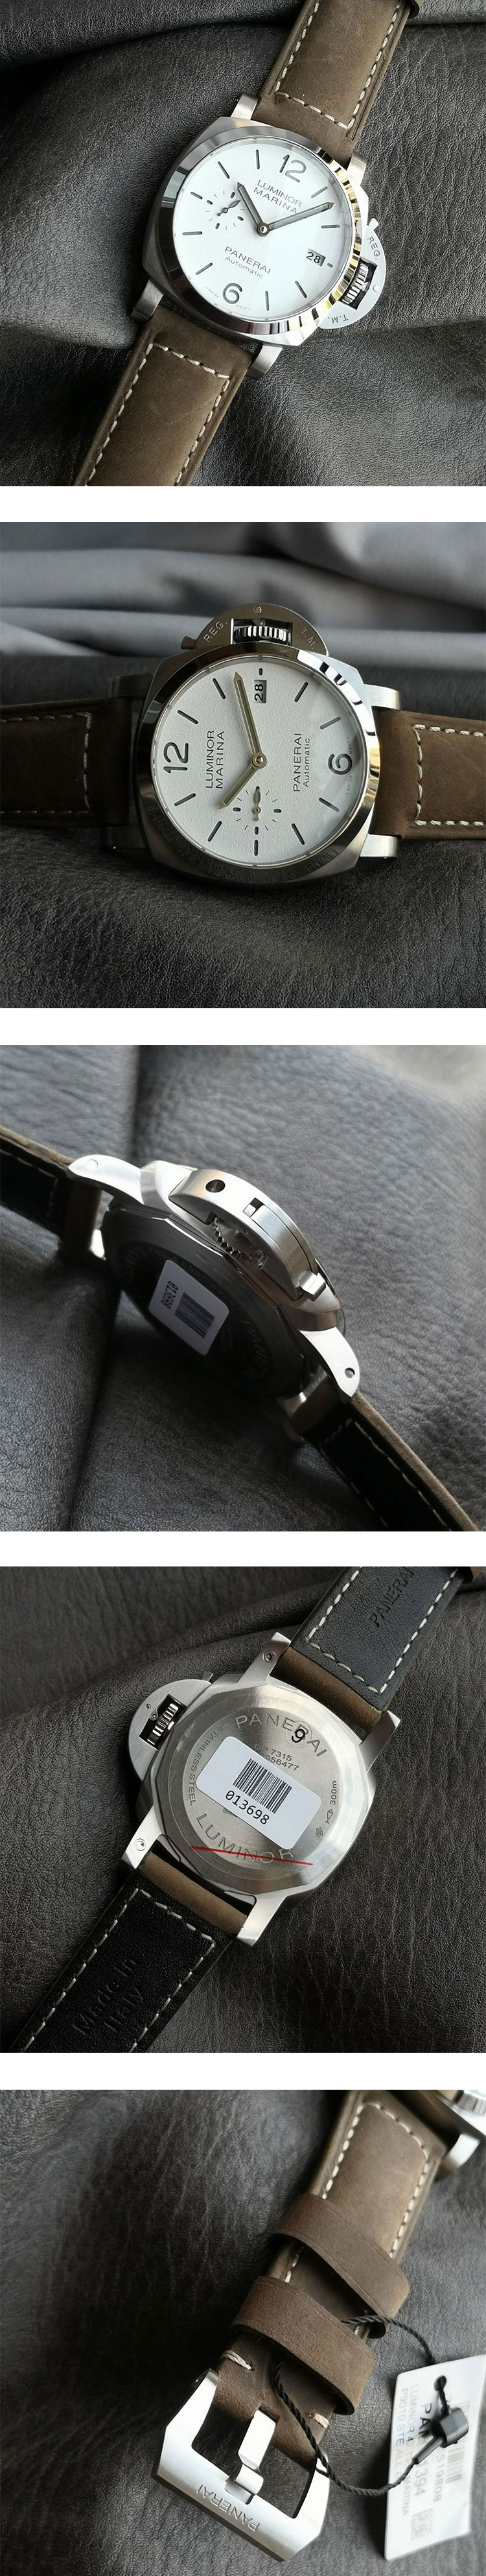 パネライスーパーコピー時計 ルミノール マリーナ - 42mm PAM01394